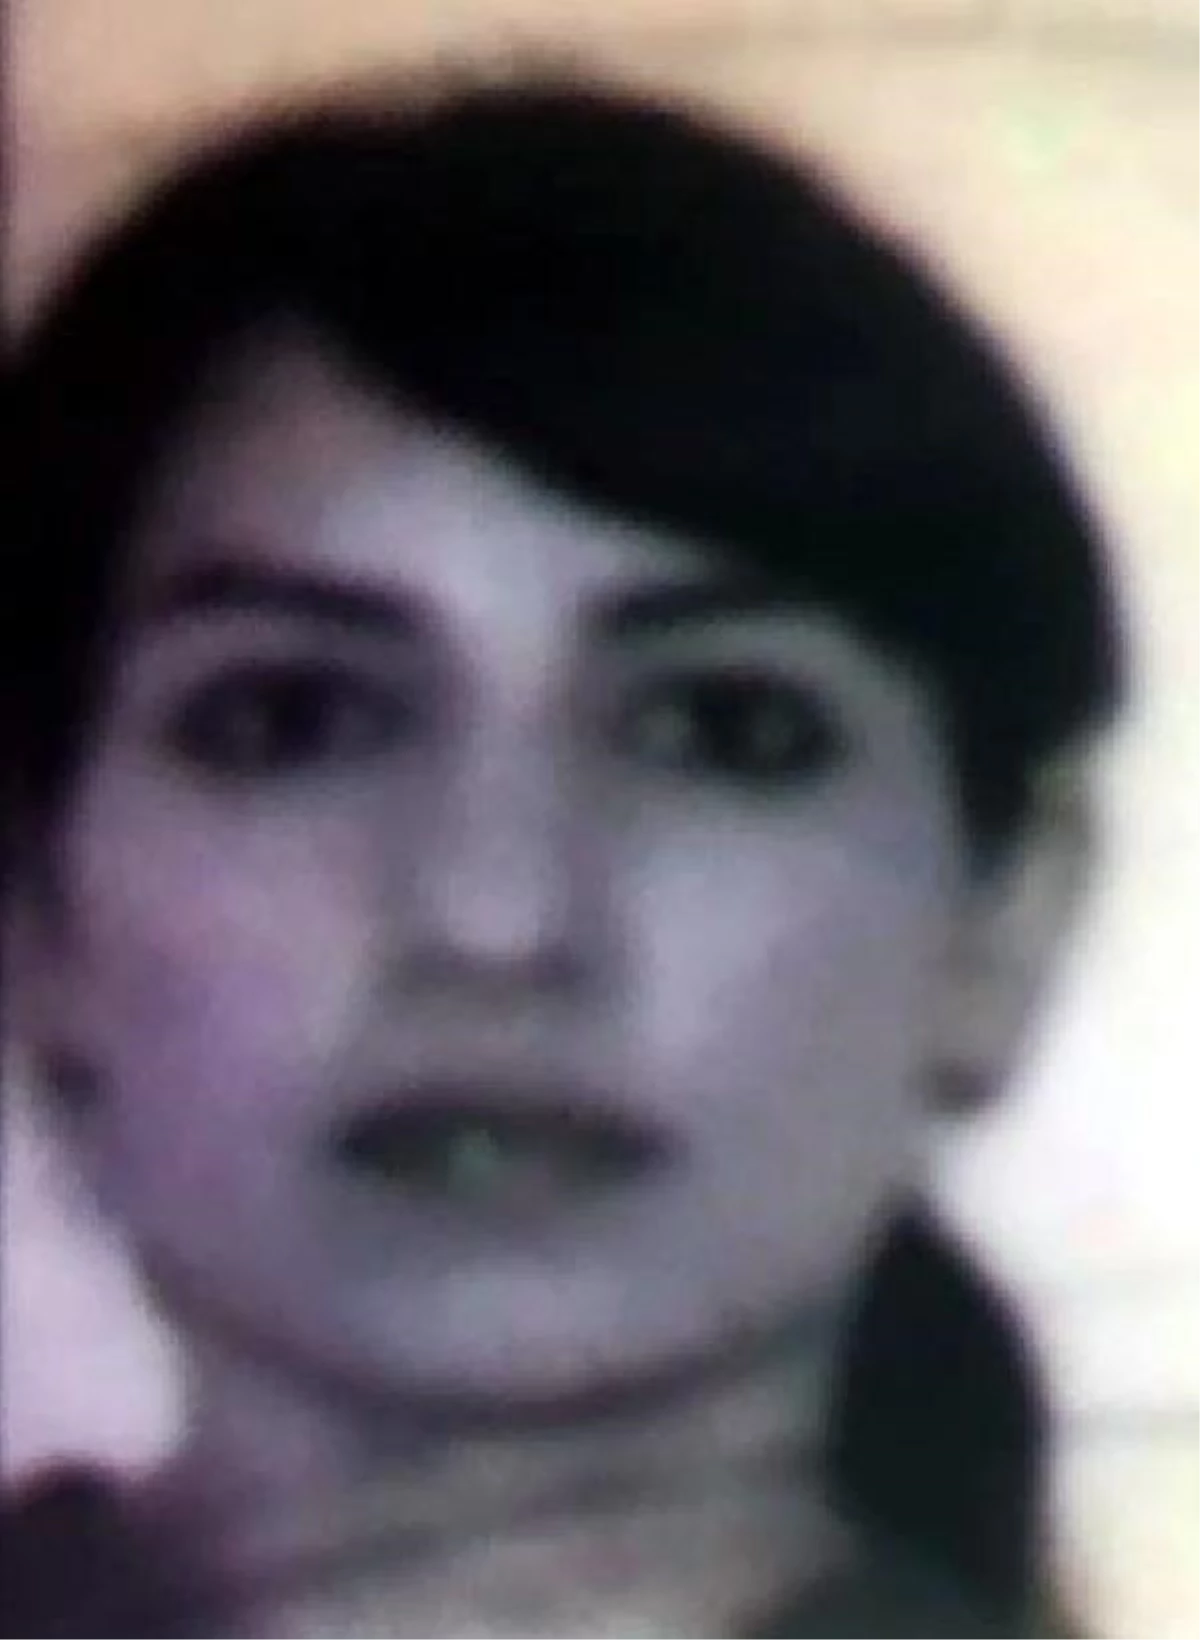 Azeri Uyruklu Kadın Kardeşi Tarafından Bıçaklanarak Öldürüldü